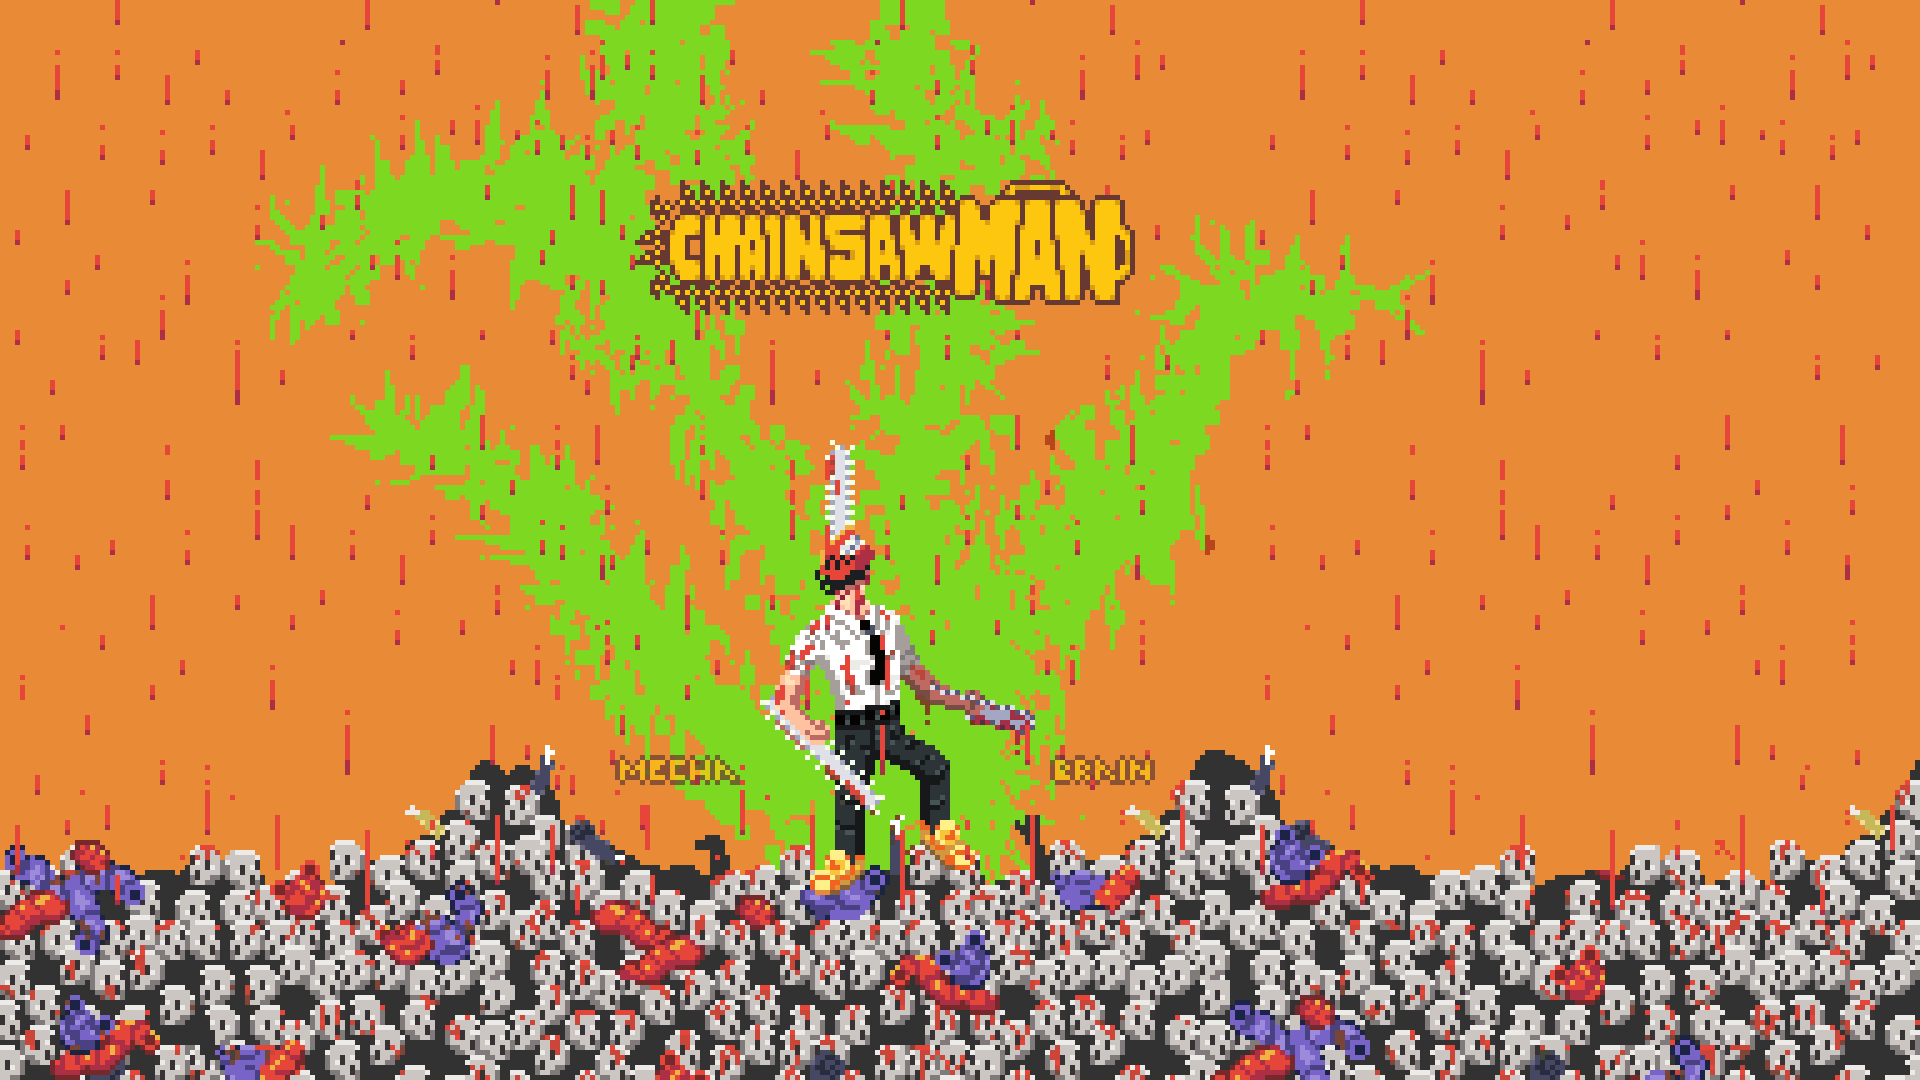 Steam artwork of Power Chainsaw Man by R2GE on DeviantArt